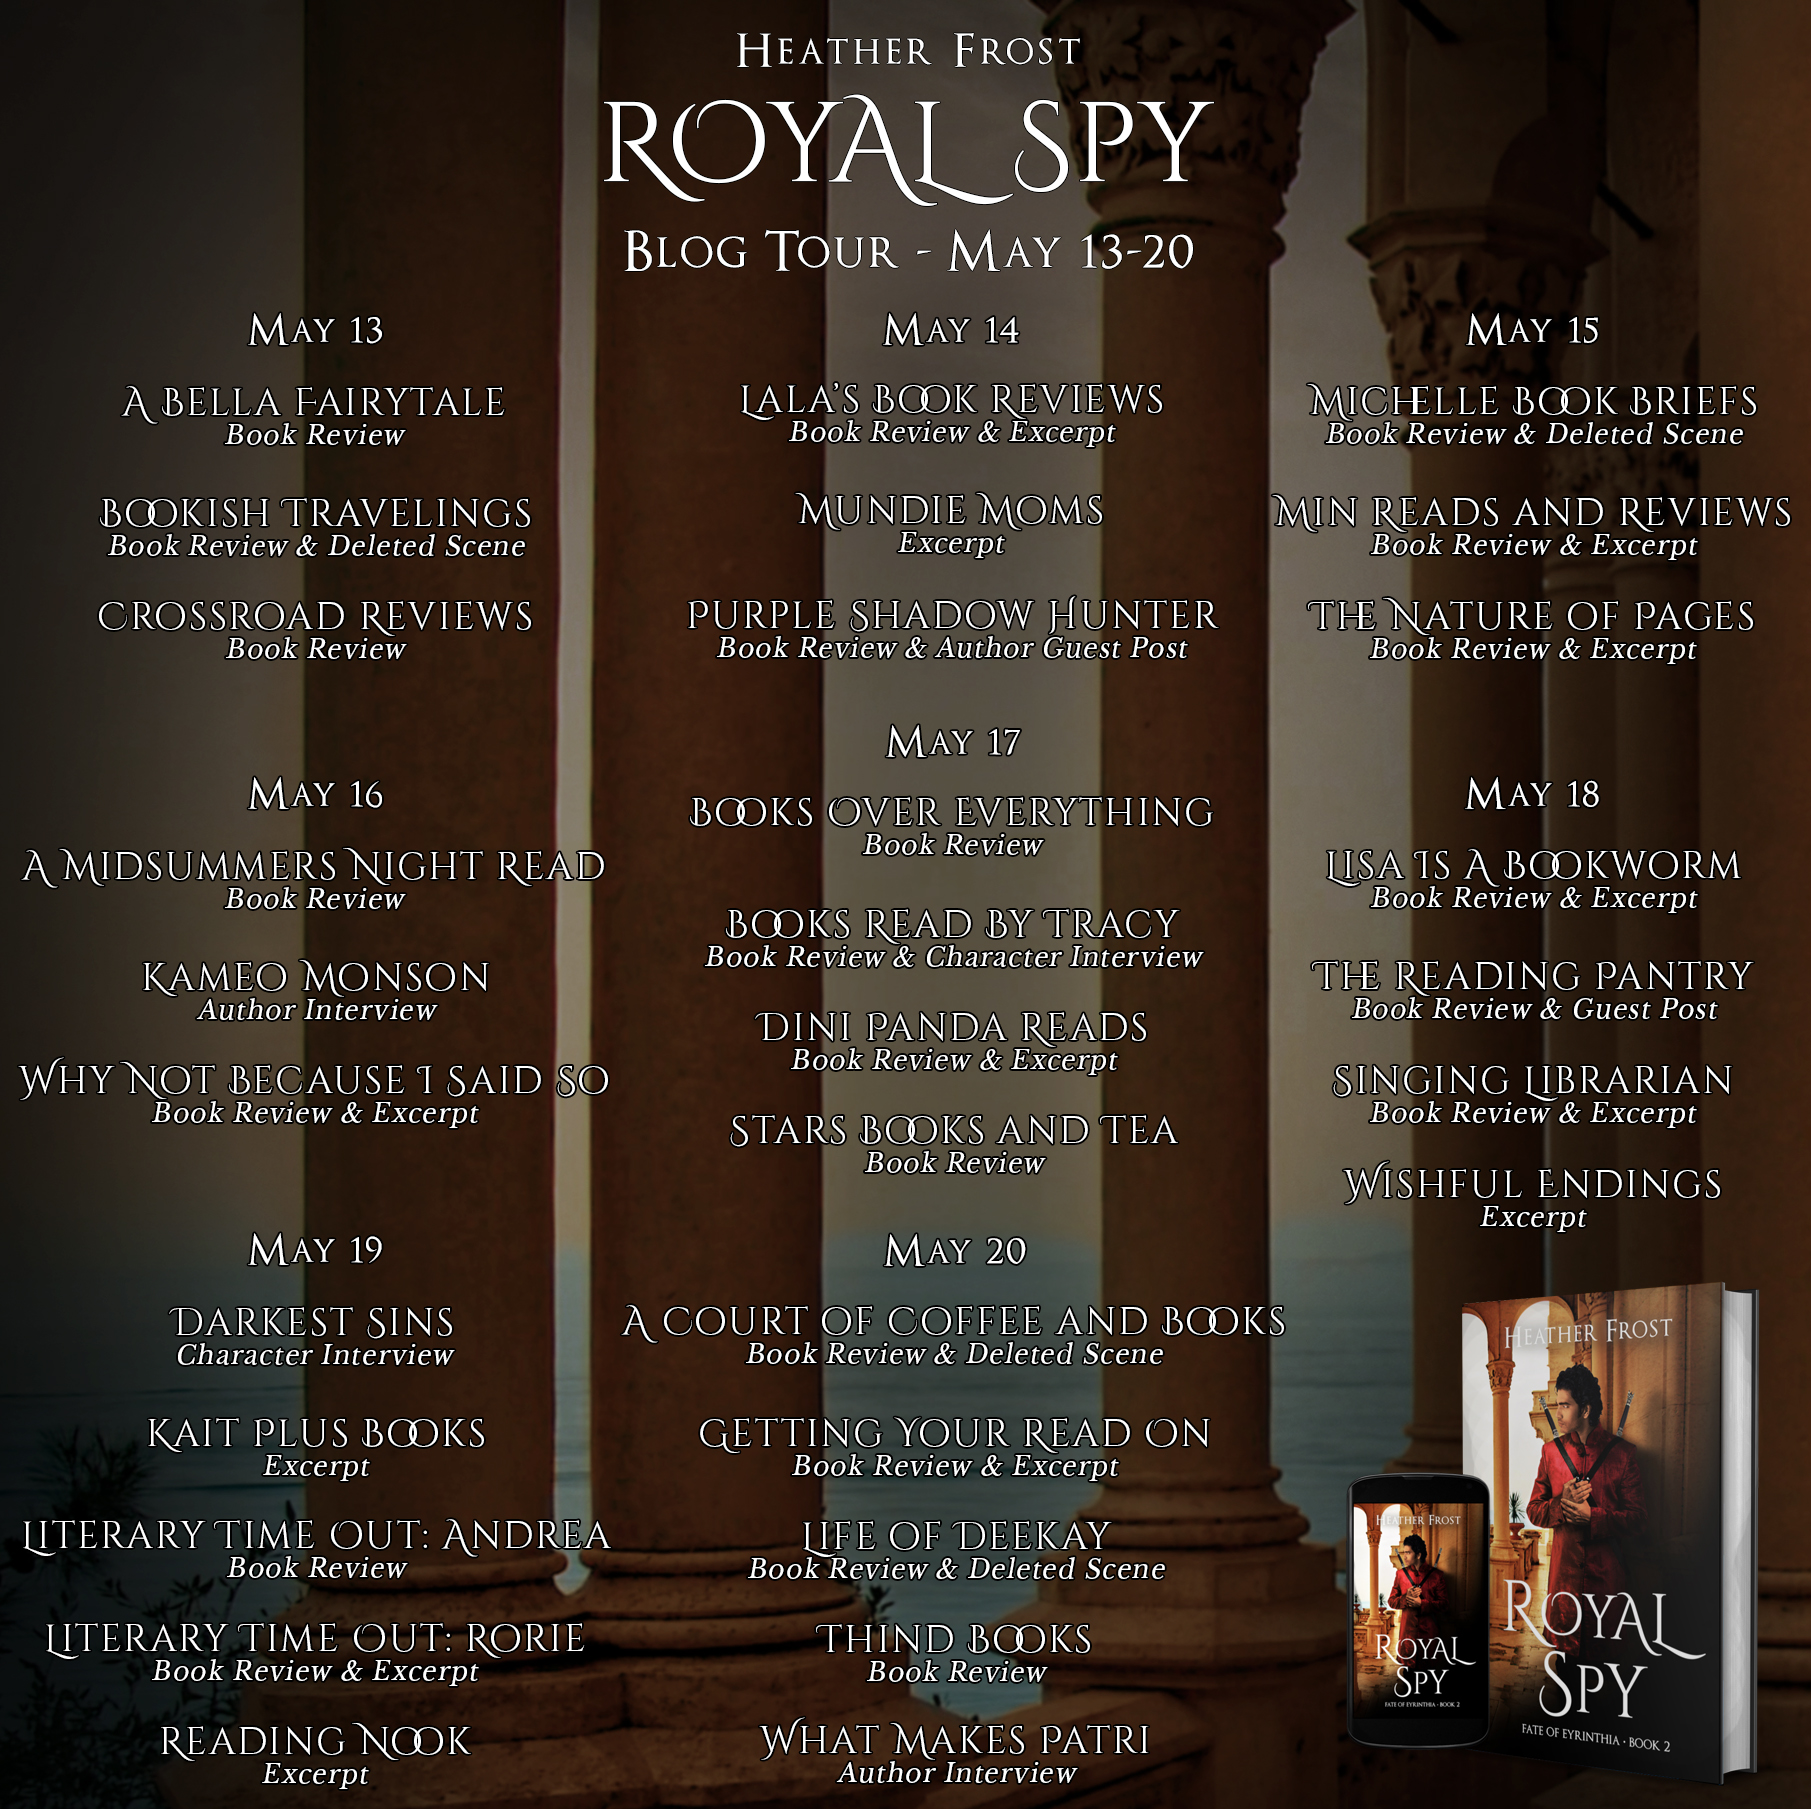 Royal Spy Blog Tour Schedule